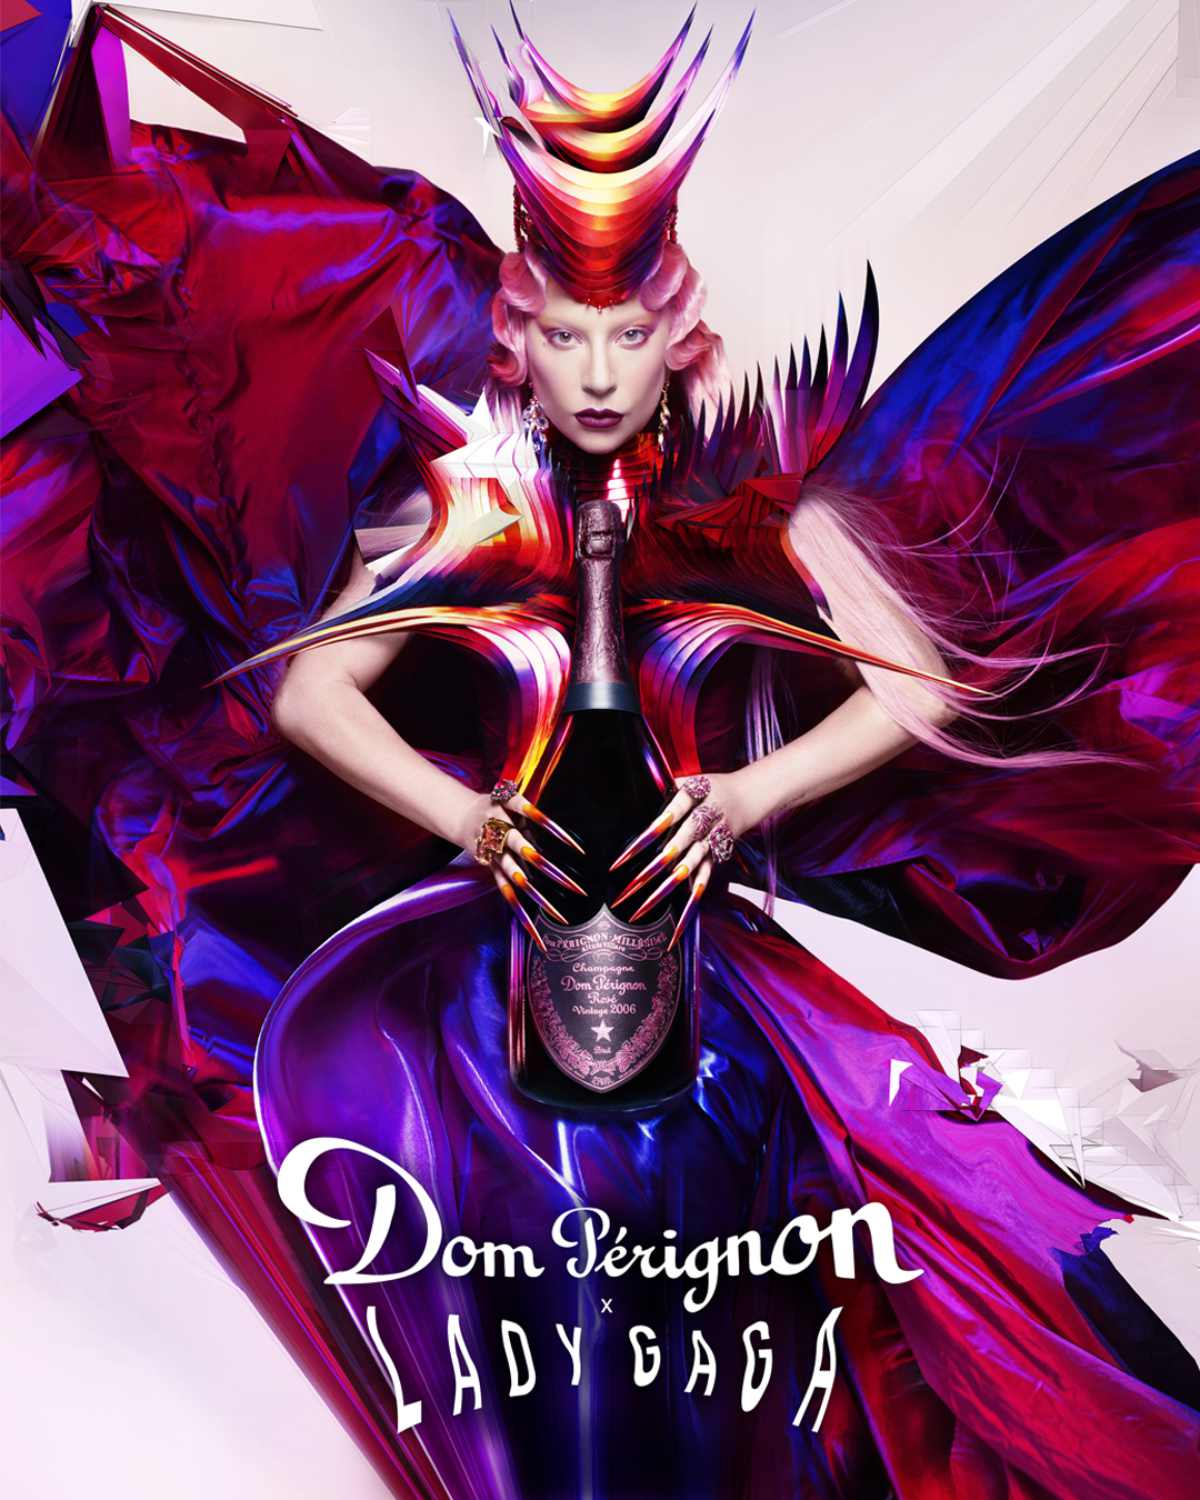 Dom Pérignon X Lady Gaga - Die Kollaboration zwischen Lady Gaga und Dom Pérignon